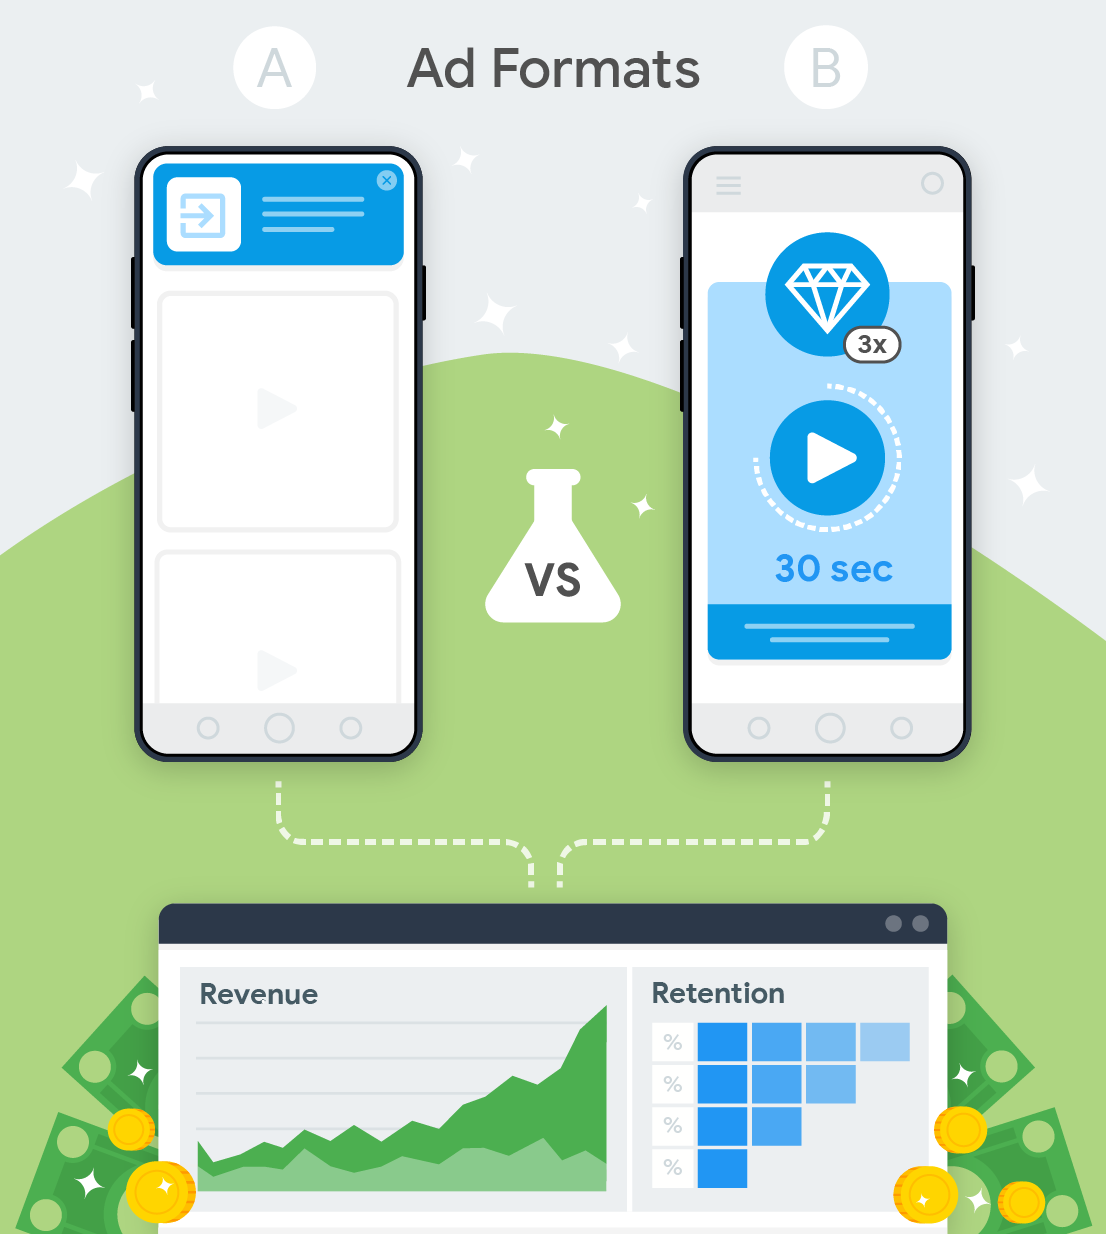 दो विज्ञापन प्रारूपों का परीक्षण और राजस्व तथा प्रतिधारण पर उनका प्रभाव